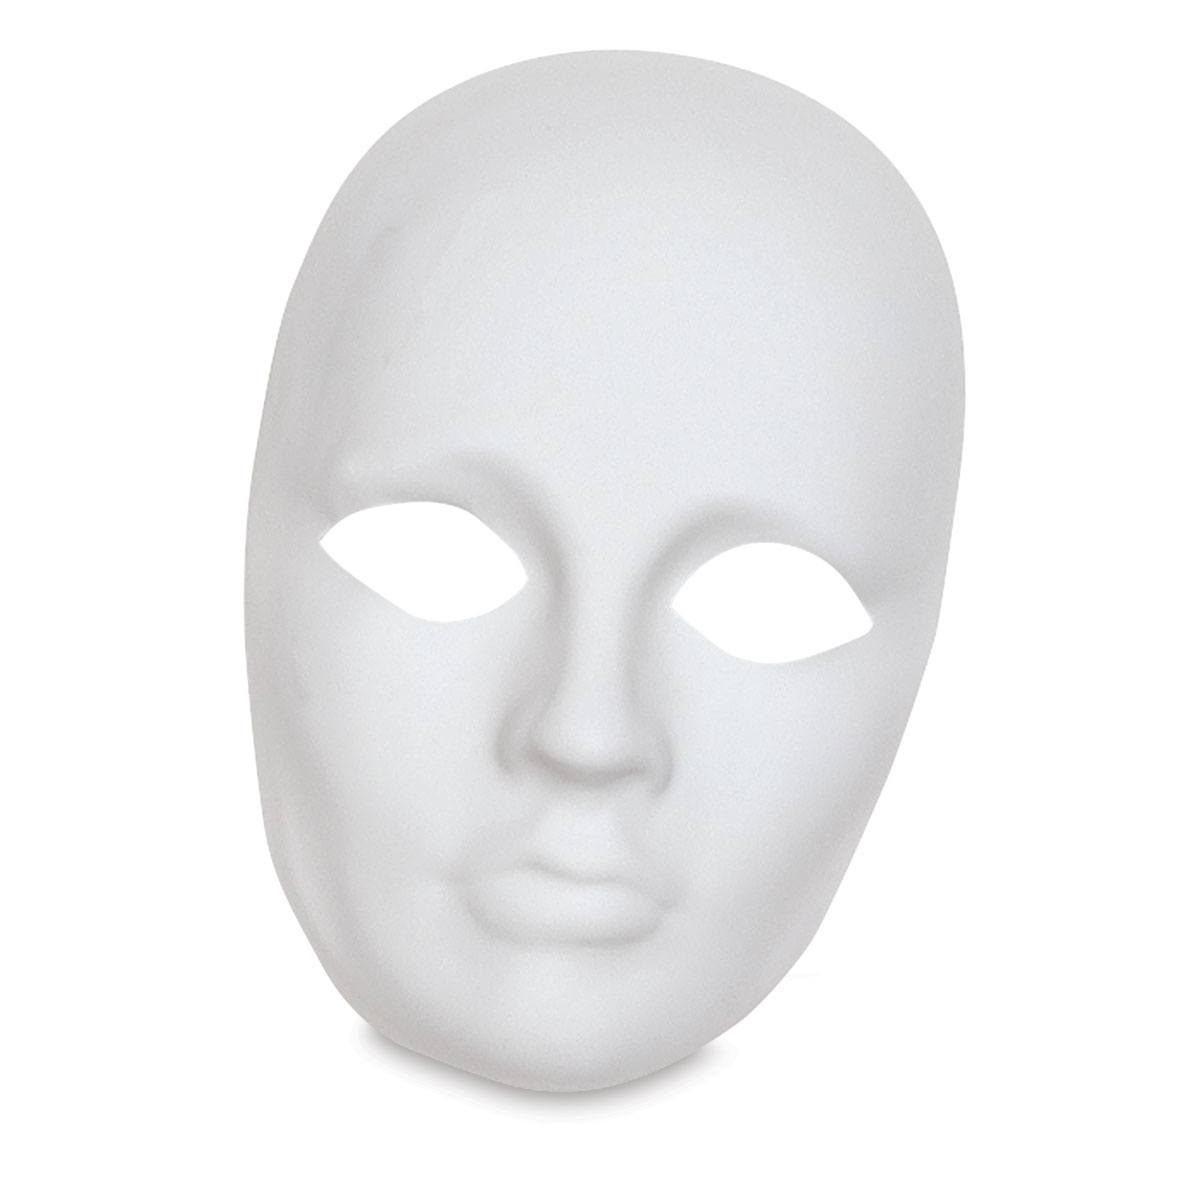  Creativity Street Plain Plastic Feminine Mask,white - 4201 :  Toys & Games